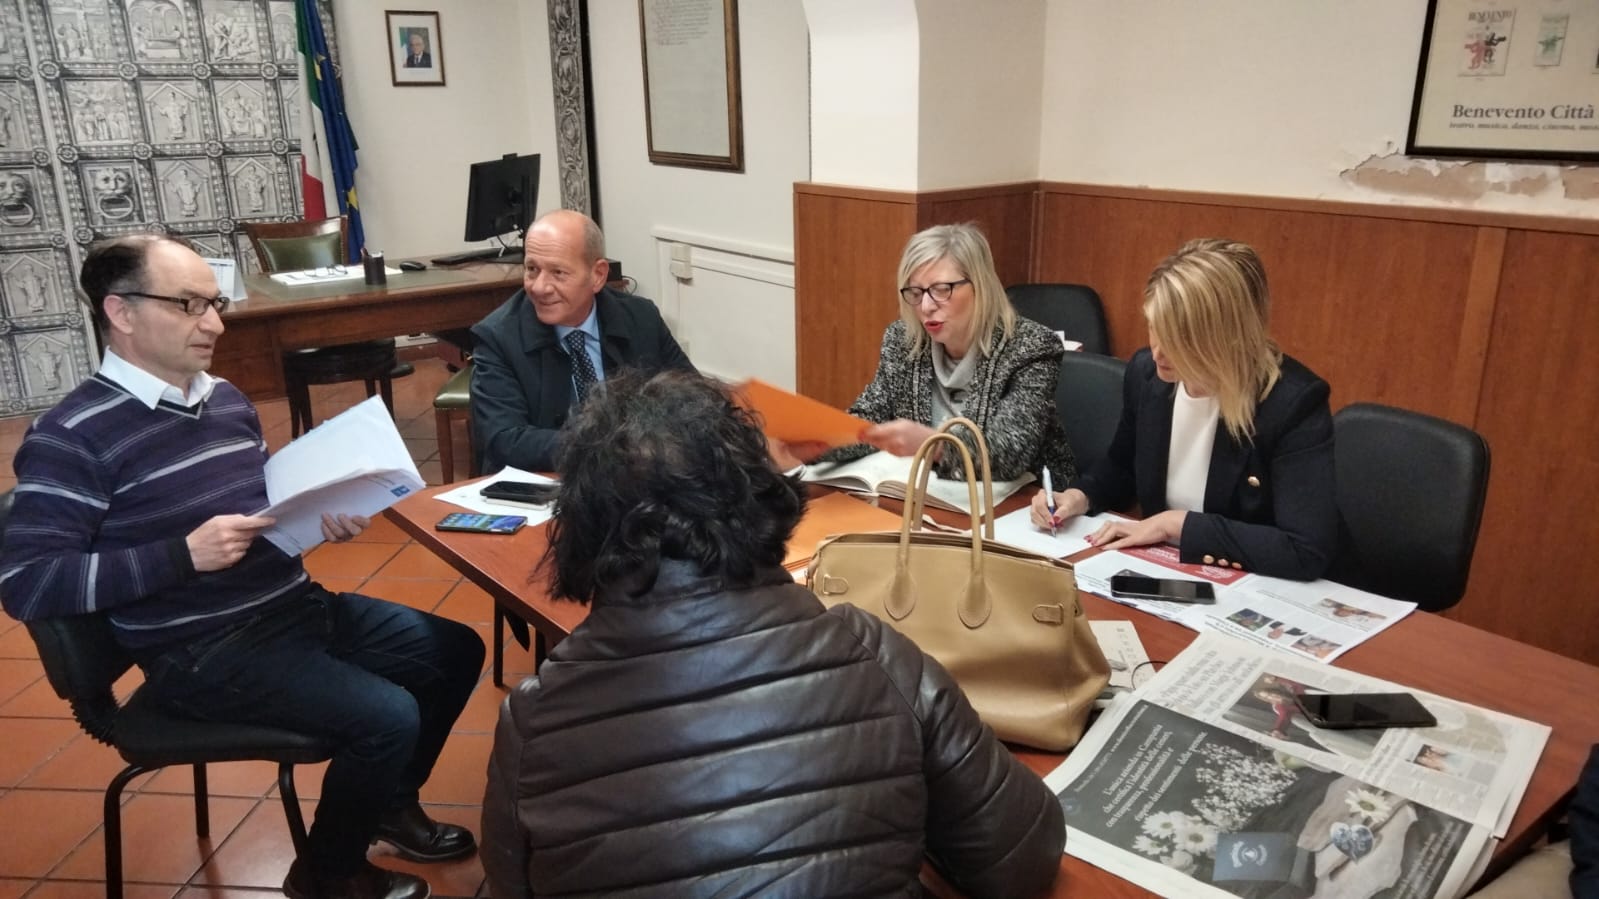 Benevento, Consiglio comunale il 29 con cinque debiti fuori bilancio